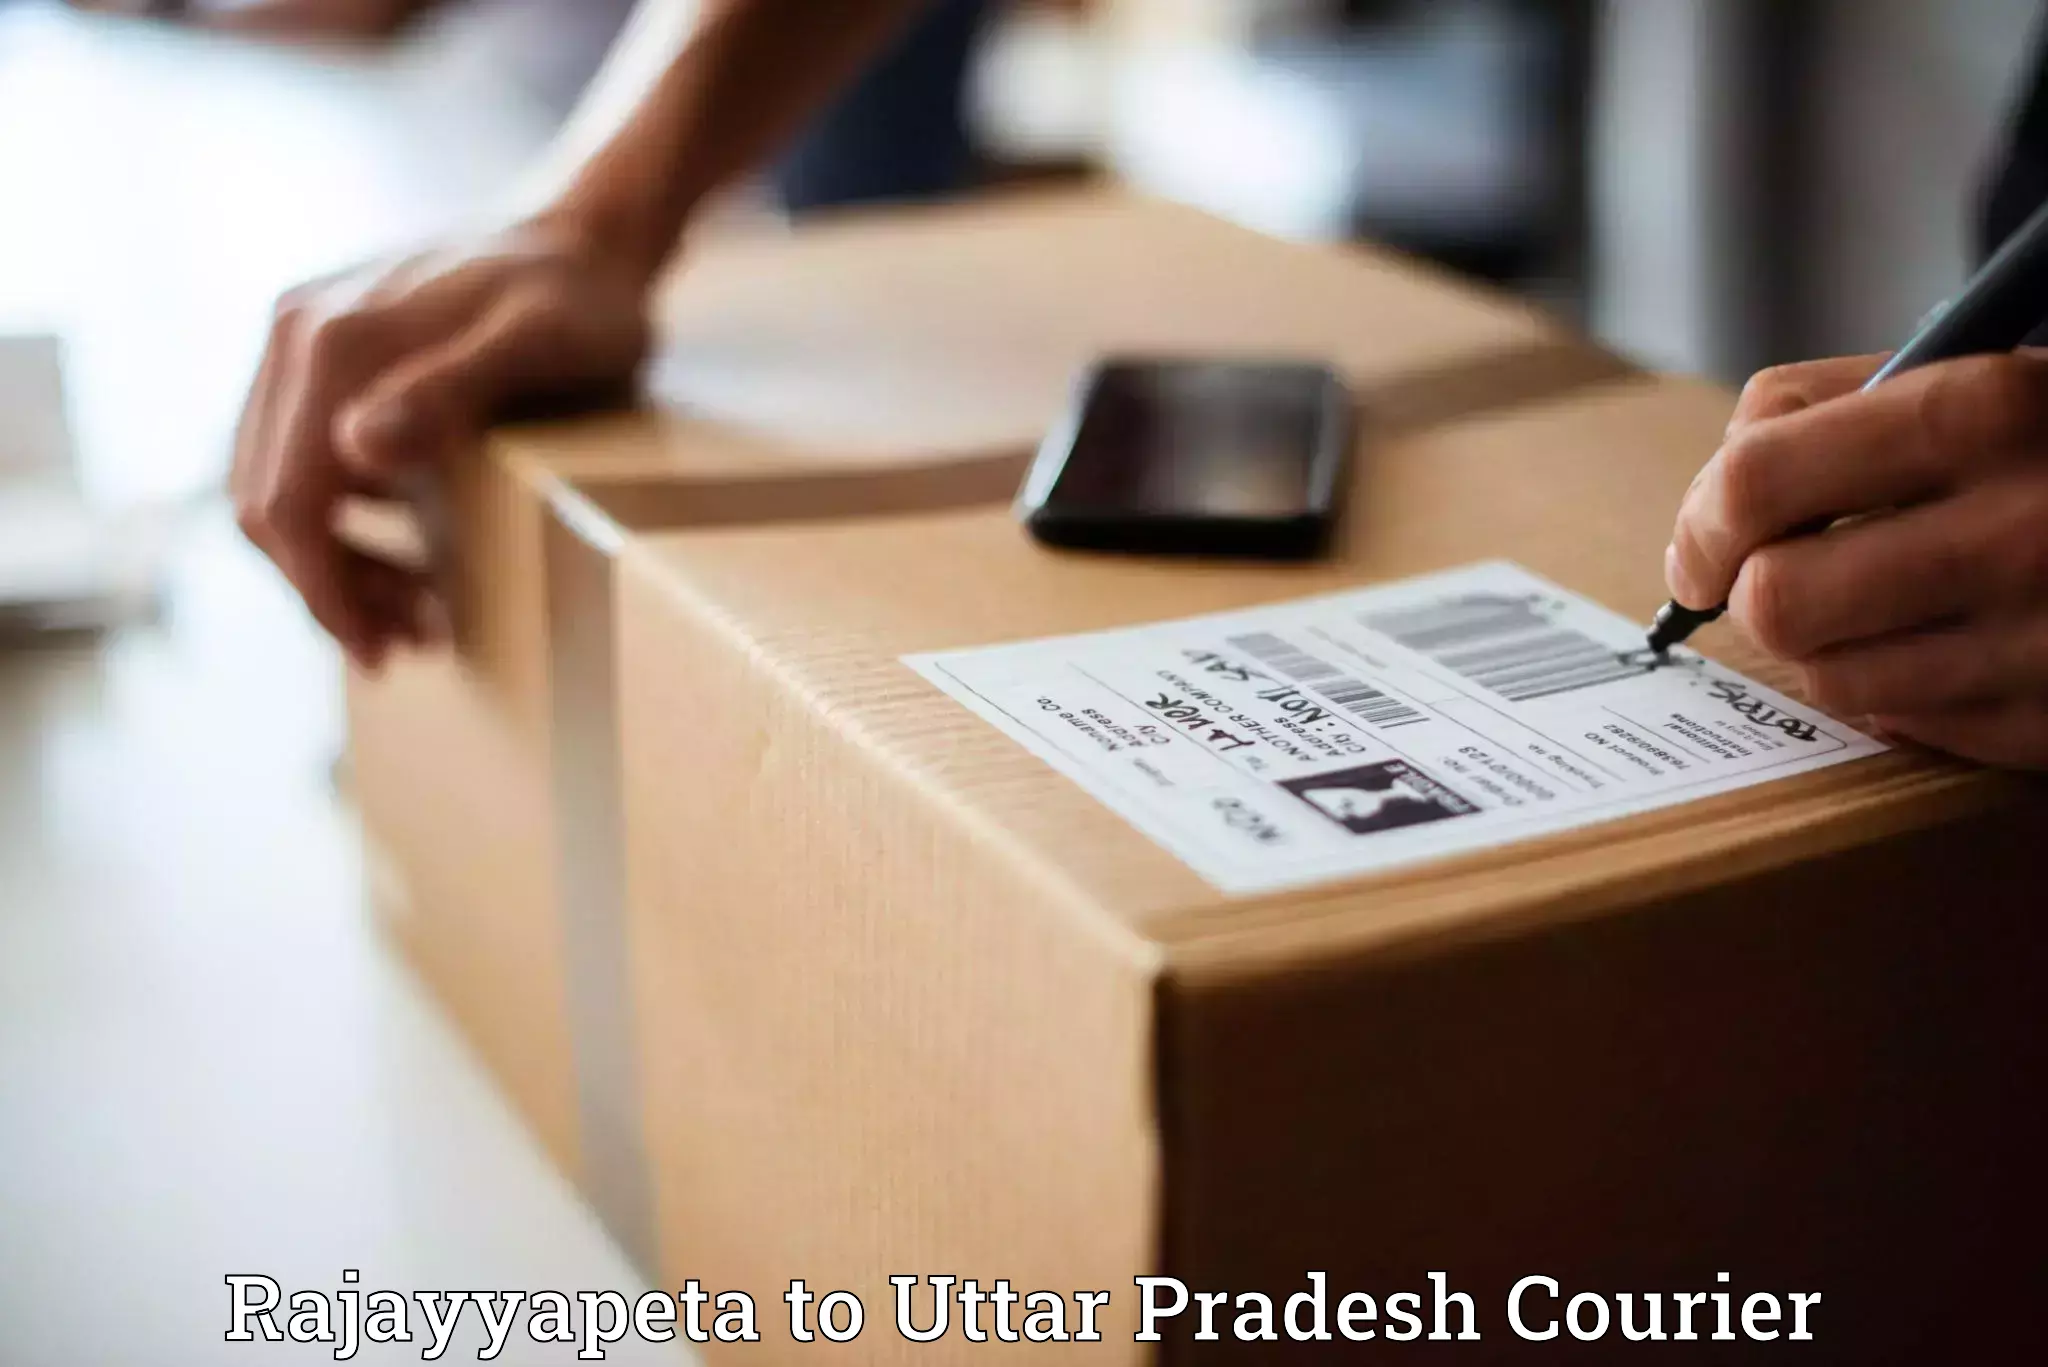 Flexible delivery schedules Rajayyapeta to Uttar Pradesh